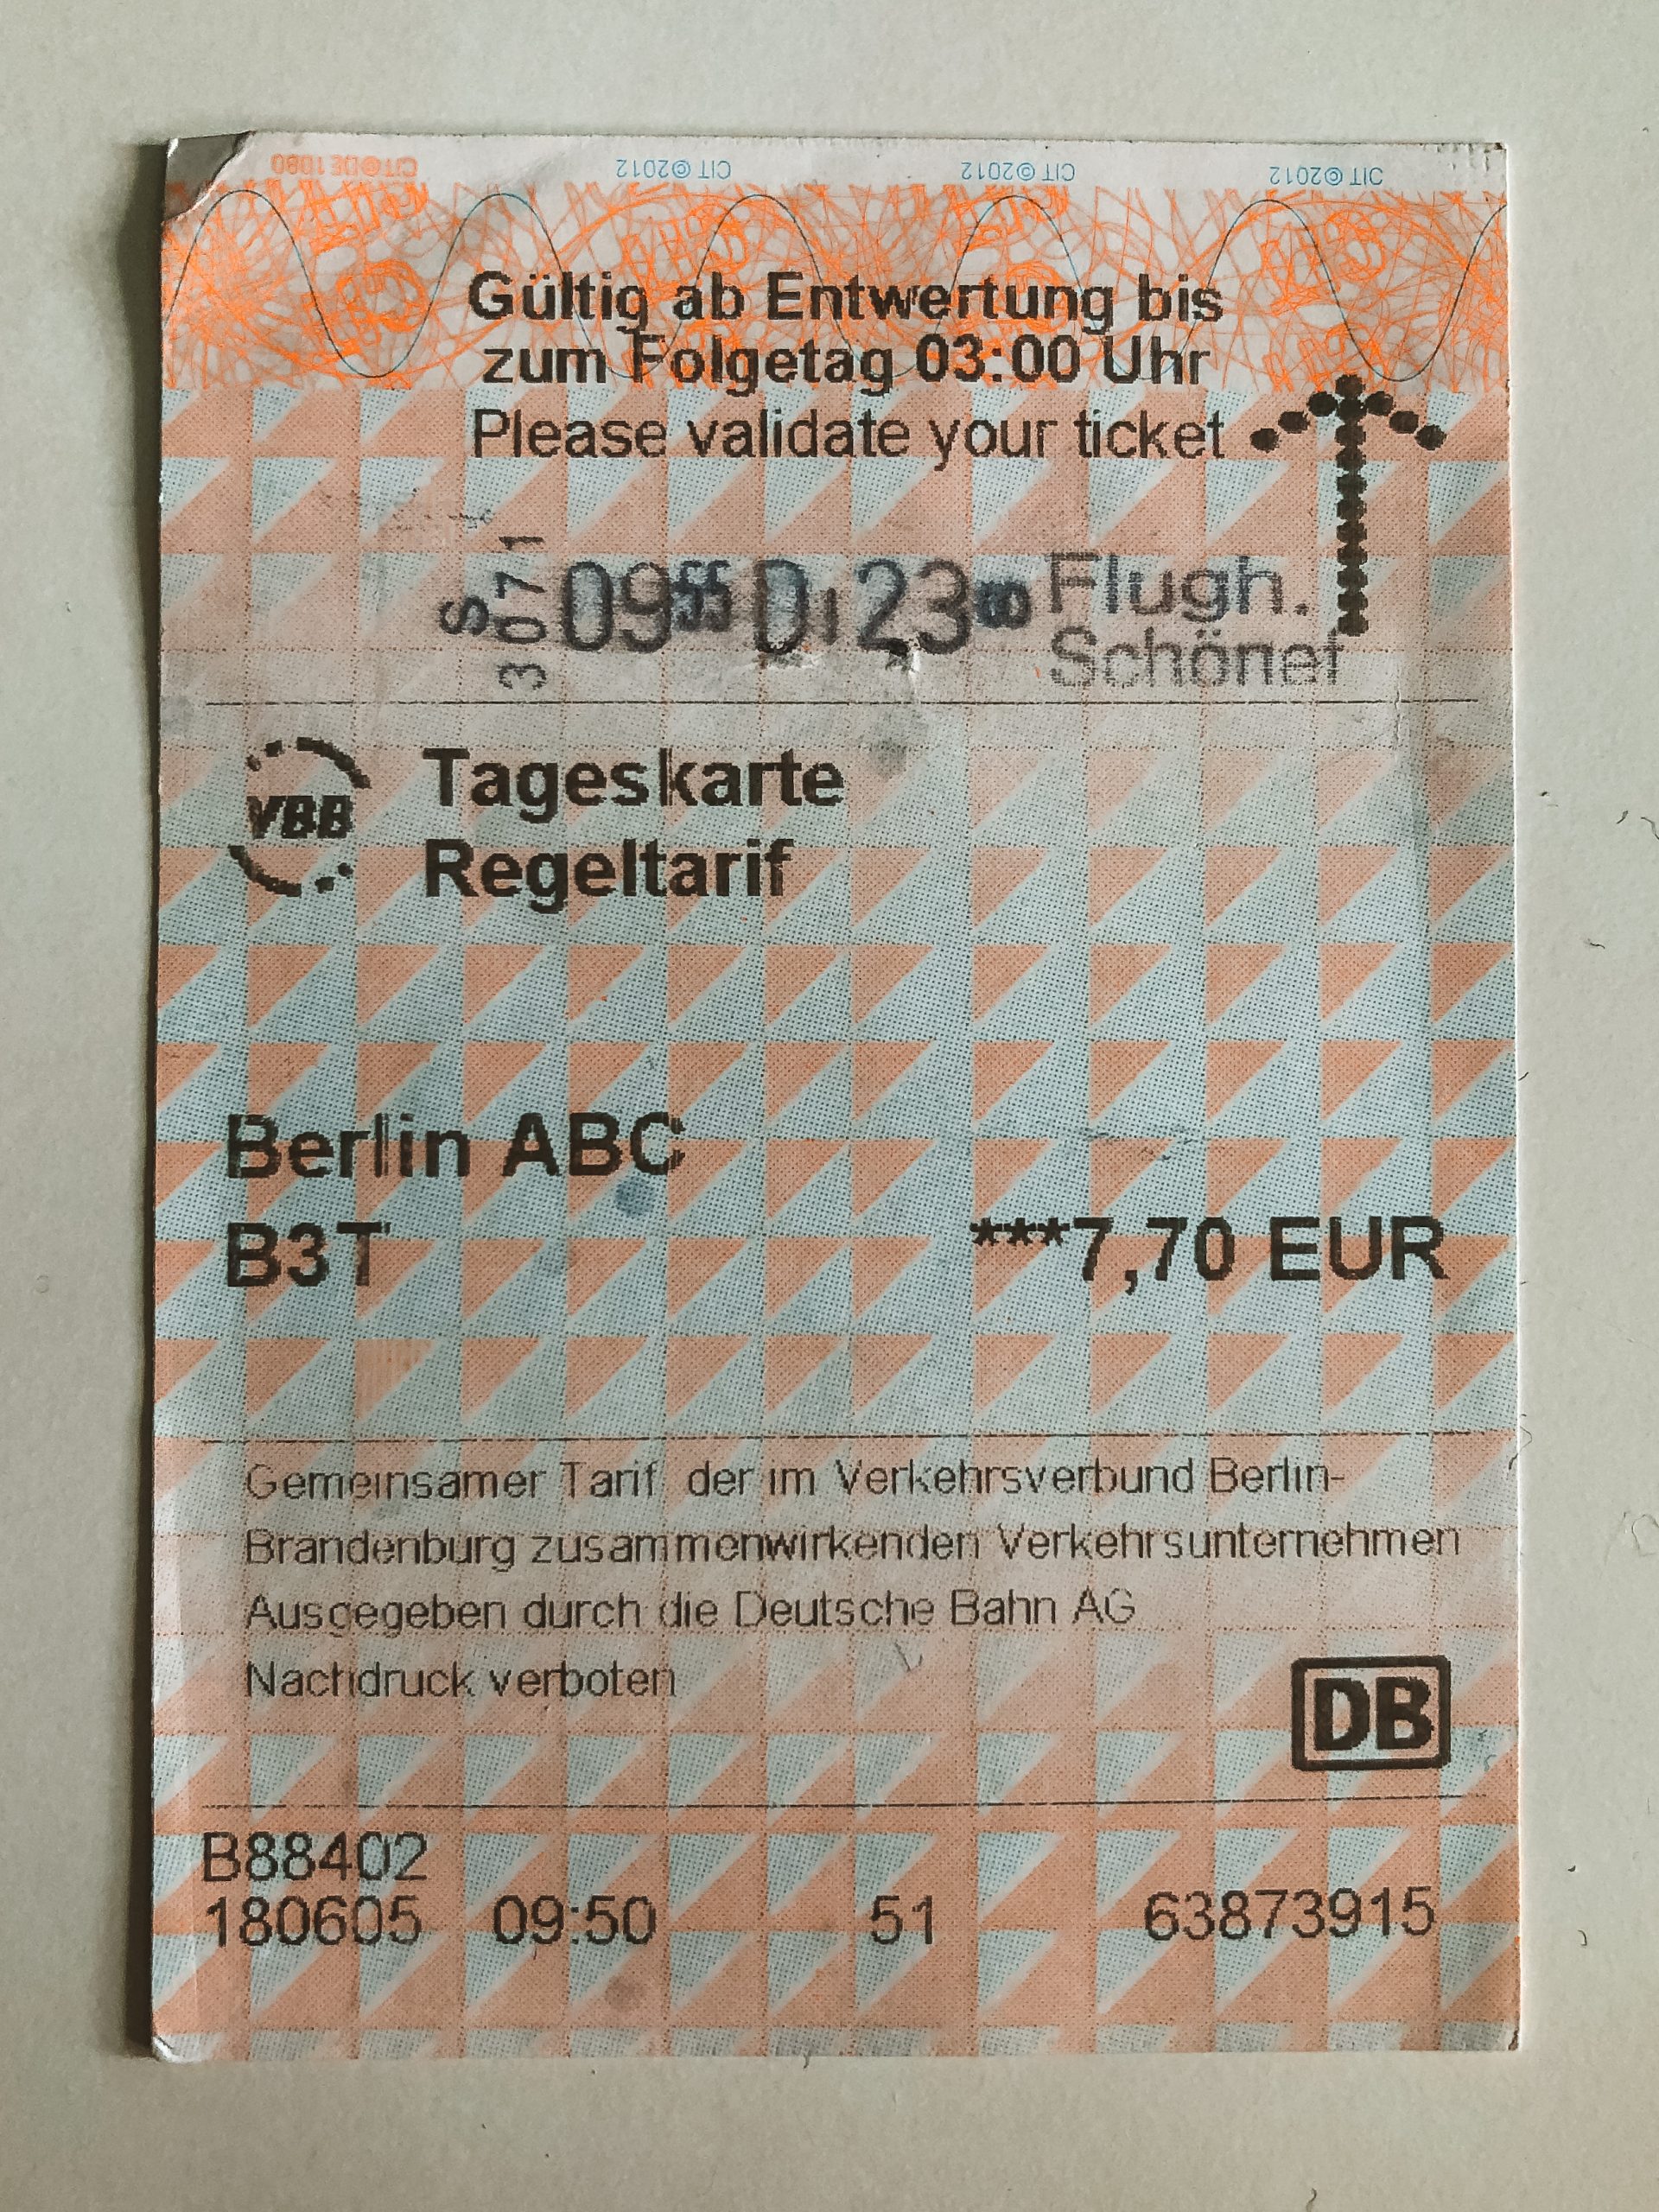 Transporte público en Berlín - Abonos y precios